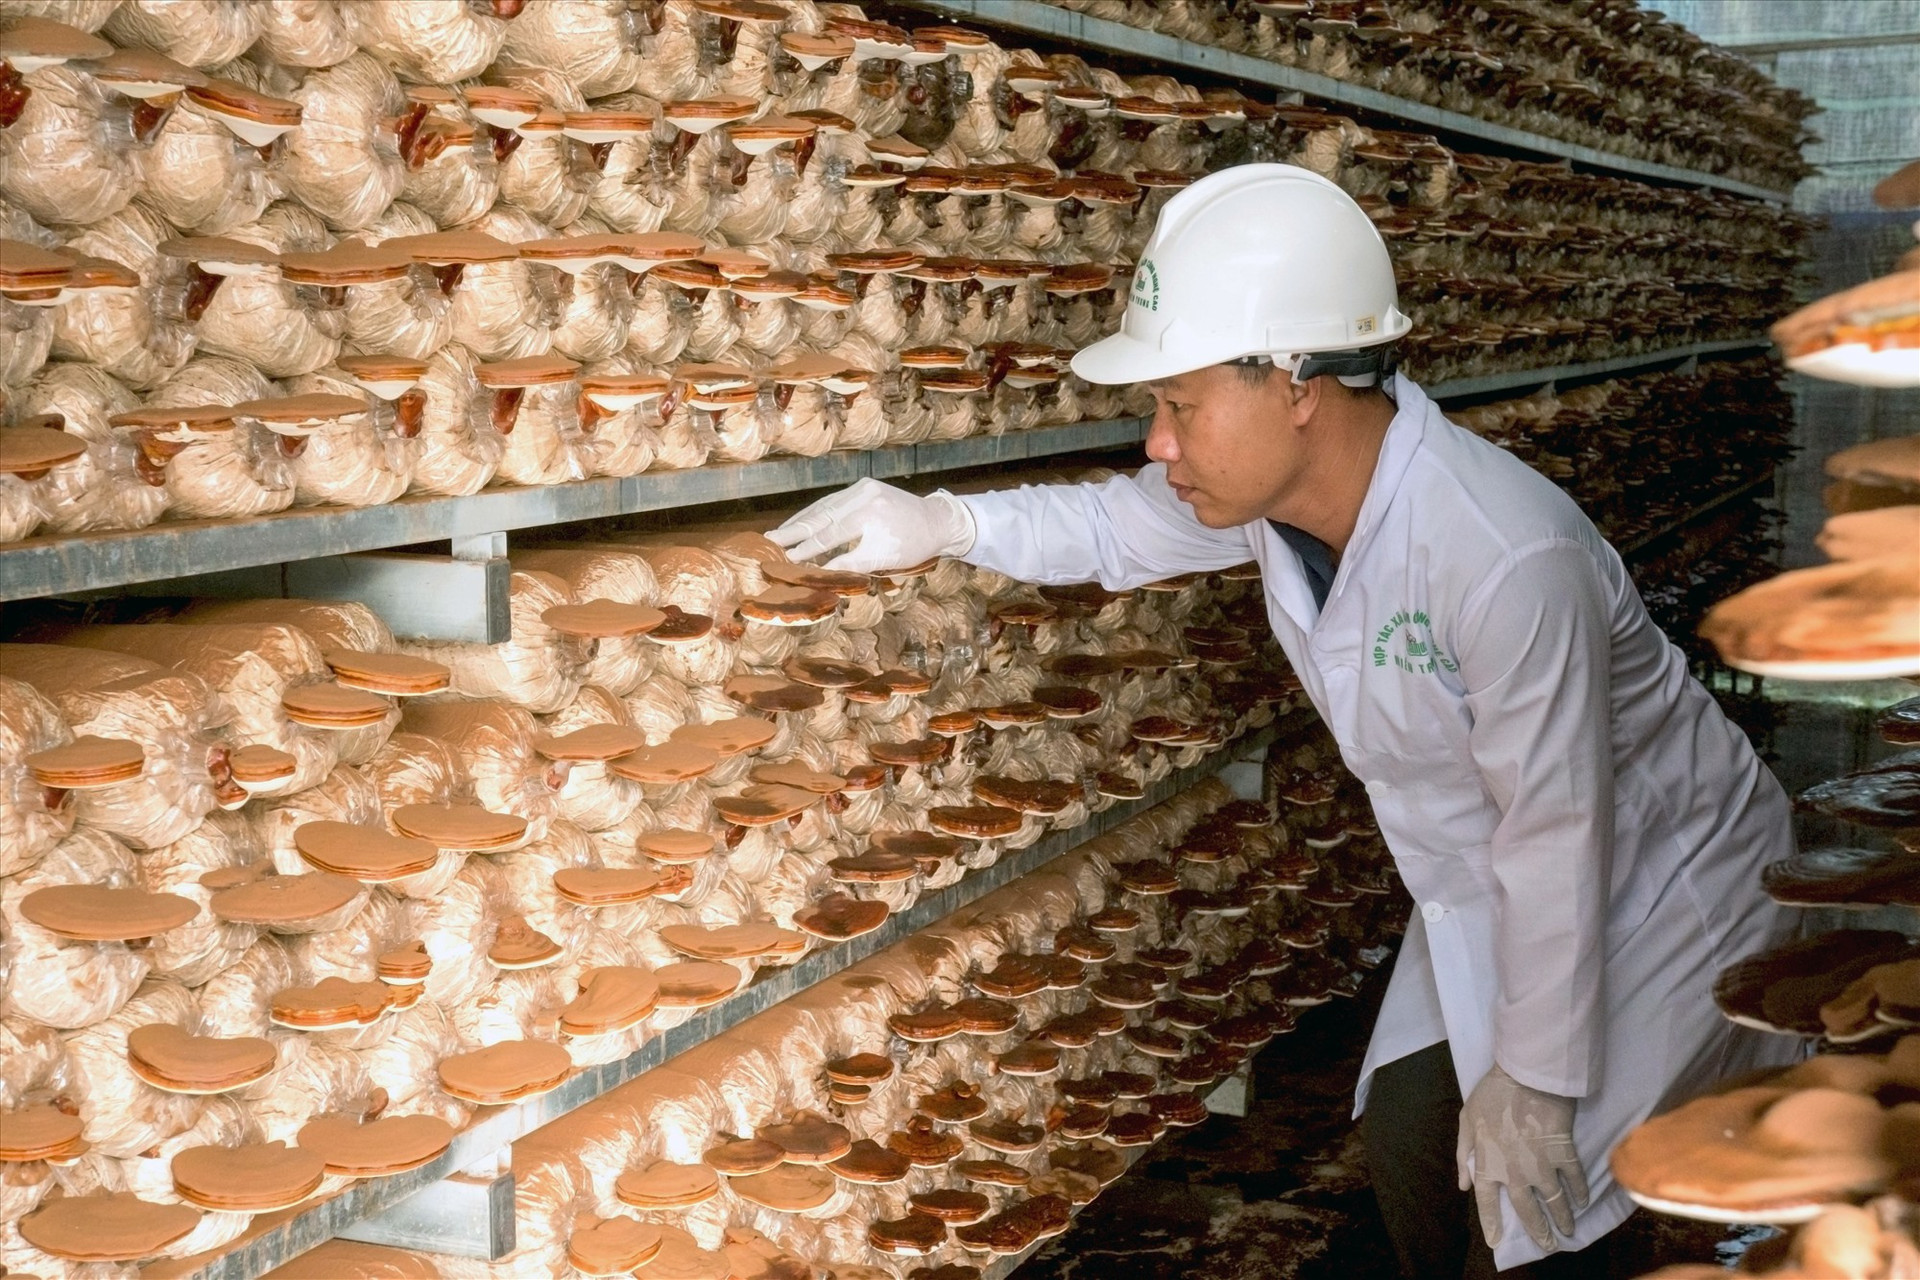 Ông Huỳnh Văn Phong kiểm tra chất lượng nấm trước khi thu hoạch. Ảnh: NGUYỄN ĐIỆN NGỌC